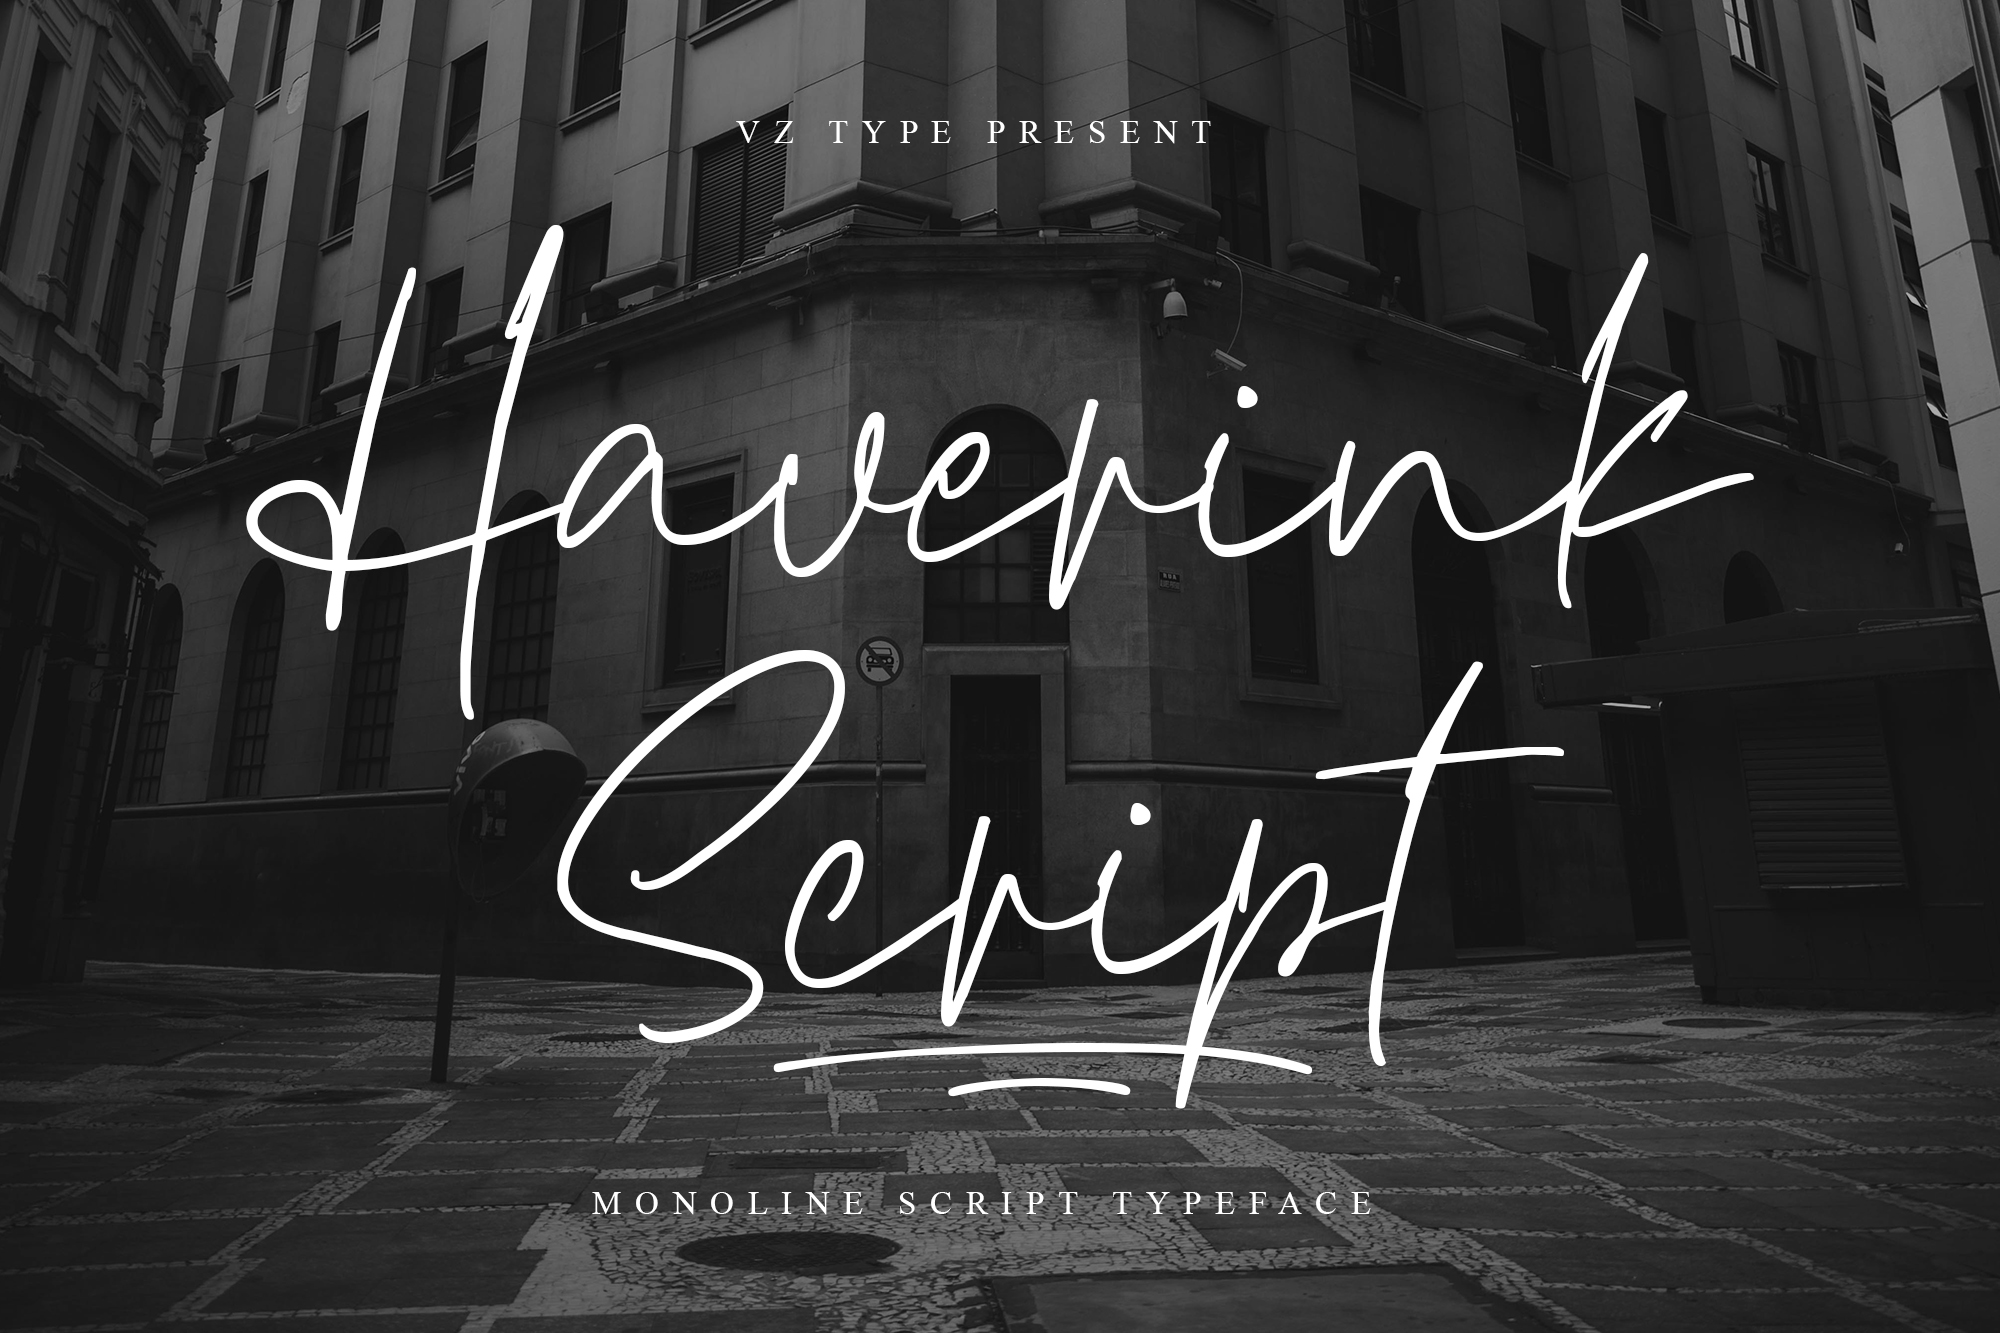 Haverink Script